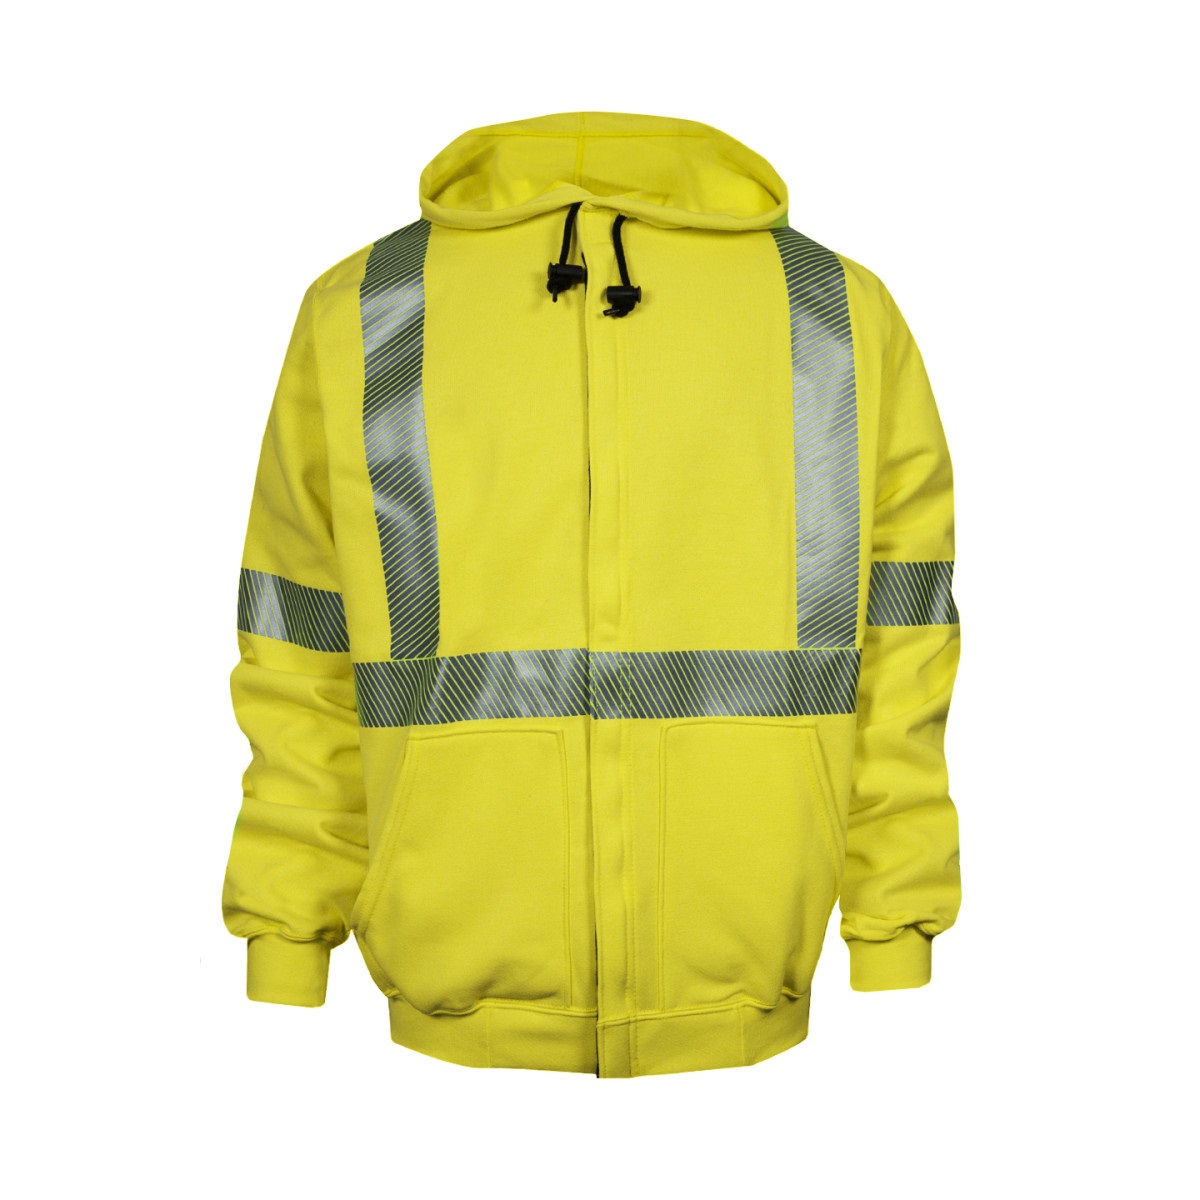 Hi-Vis FR Hooded Sweatshirt with Zipper in Fluorescent Yellow